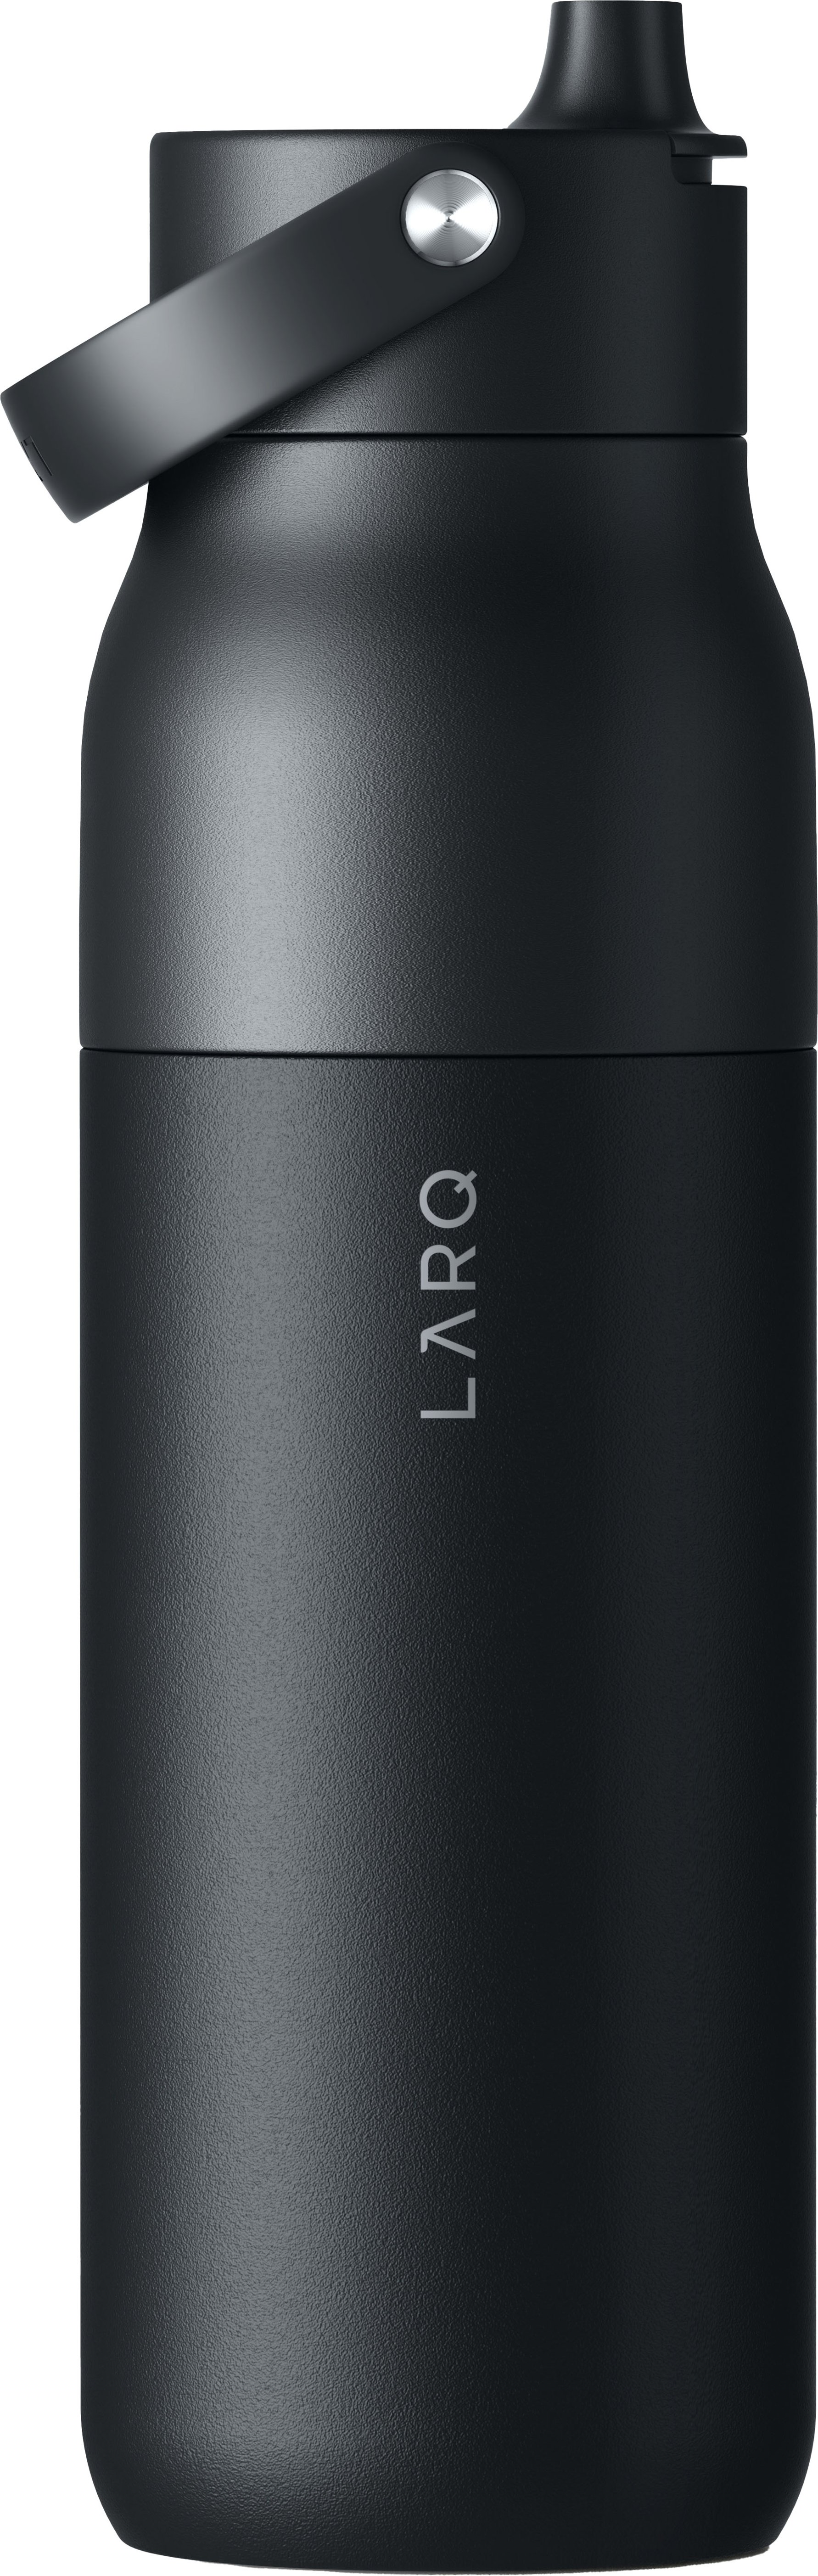 LARQ Self-Cleaning Water Bottle 25 oz. - Obsidian Black